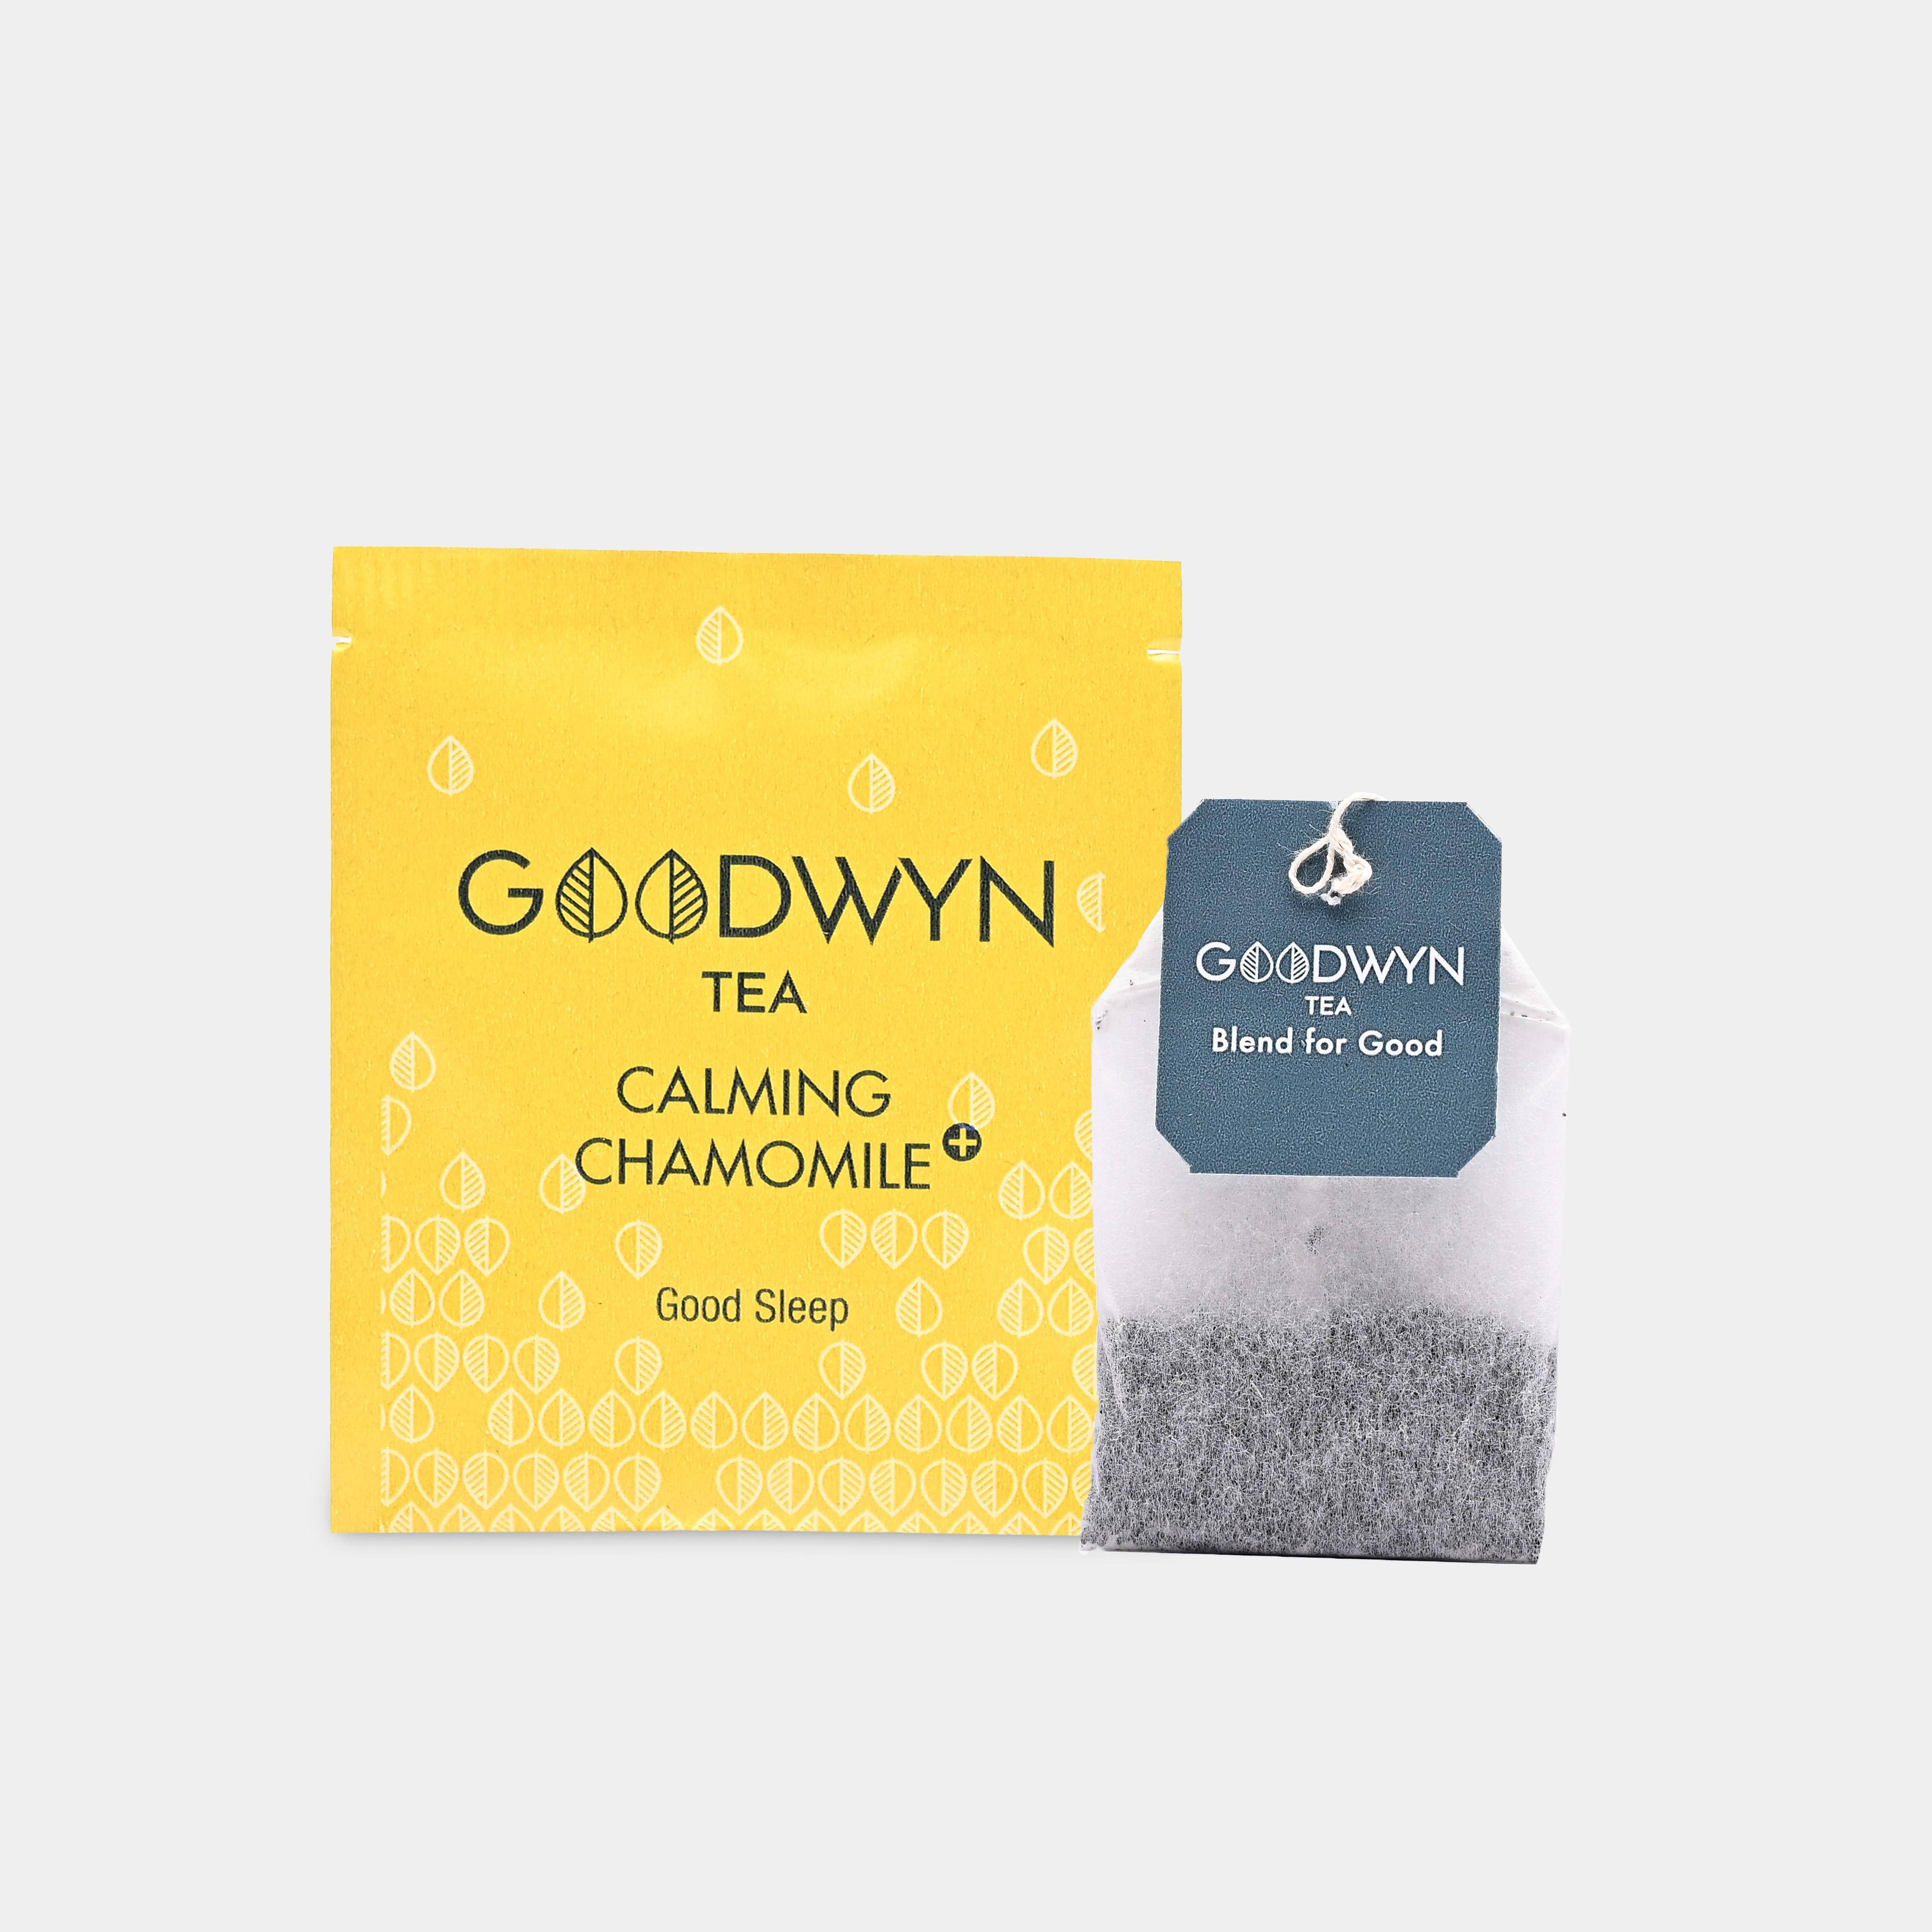 Goodwyn Chammomile Enveloped Tea Bags 100s